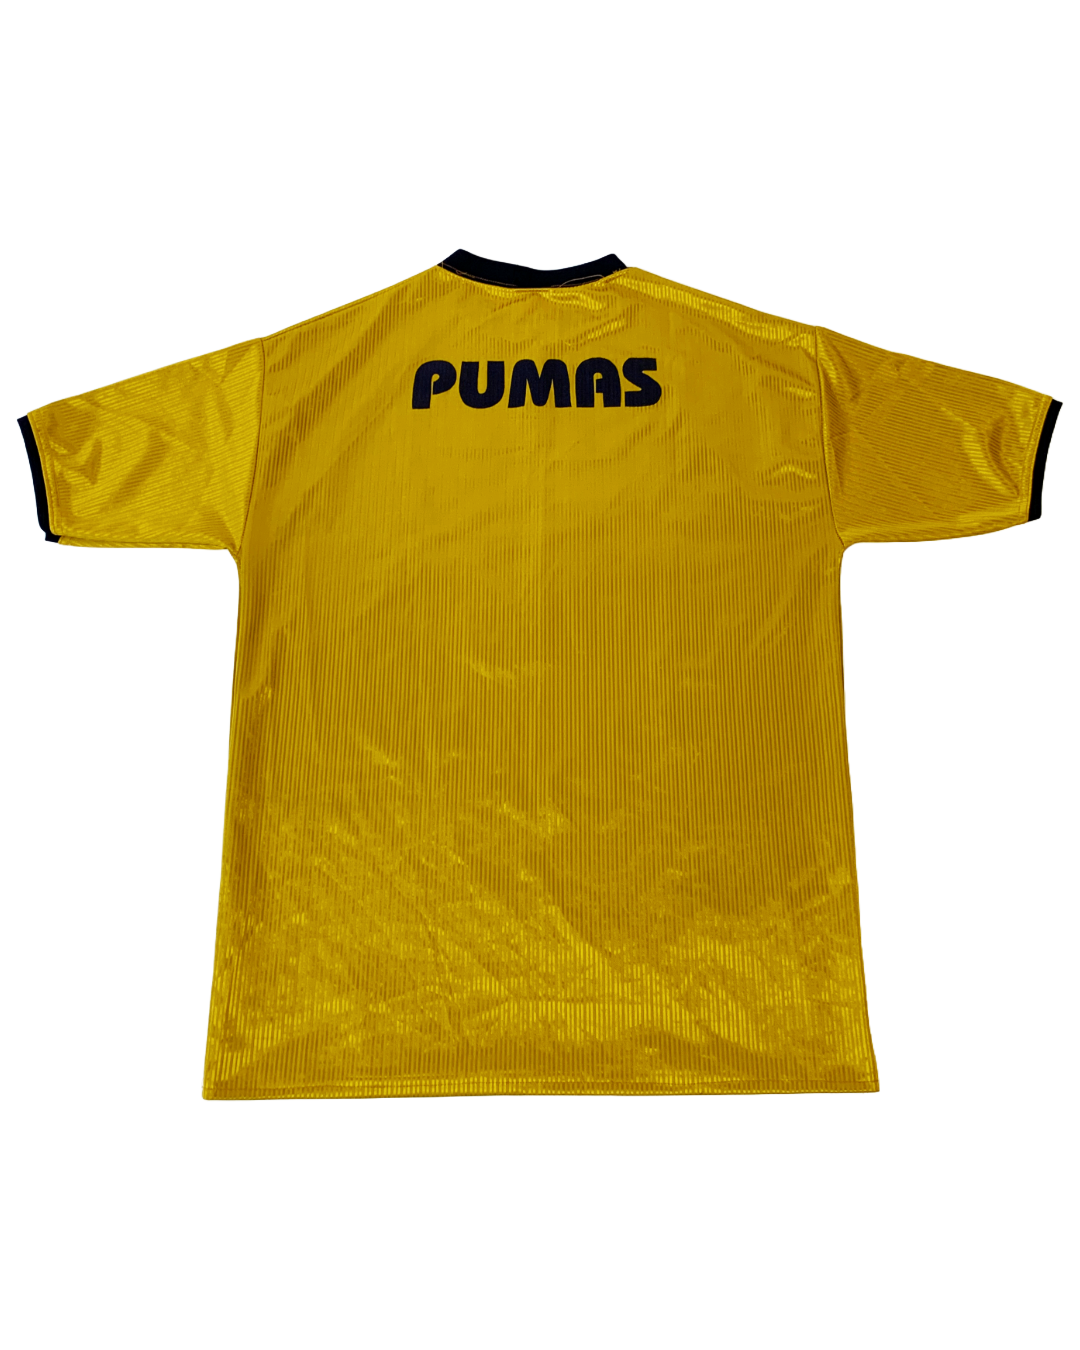 Pumas Retro Vintage Jersey - M